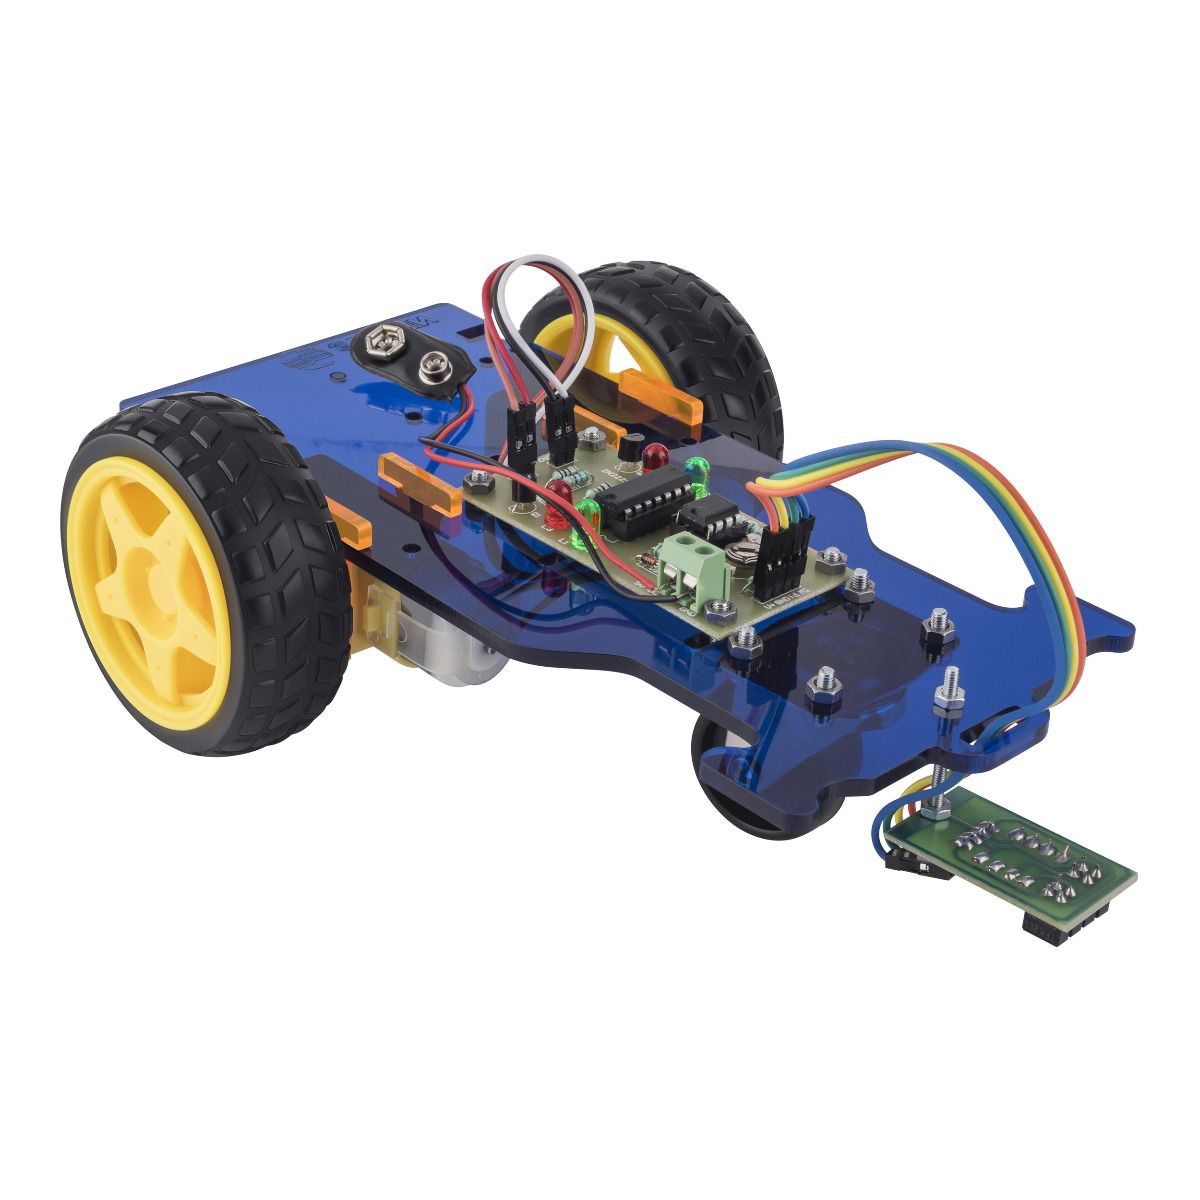 juguete de robot eléctrico inductivo Pluma mágica Original de seguidor juguete educativo creativo regalos de Navidad coche con seguimiento de cualquier línea que dibujas 